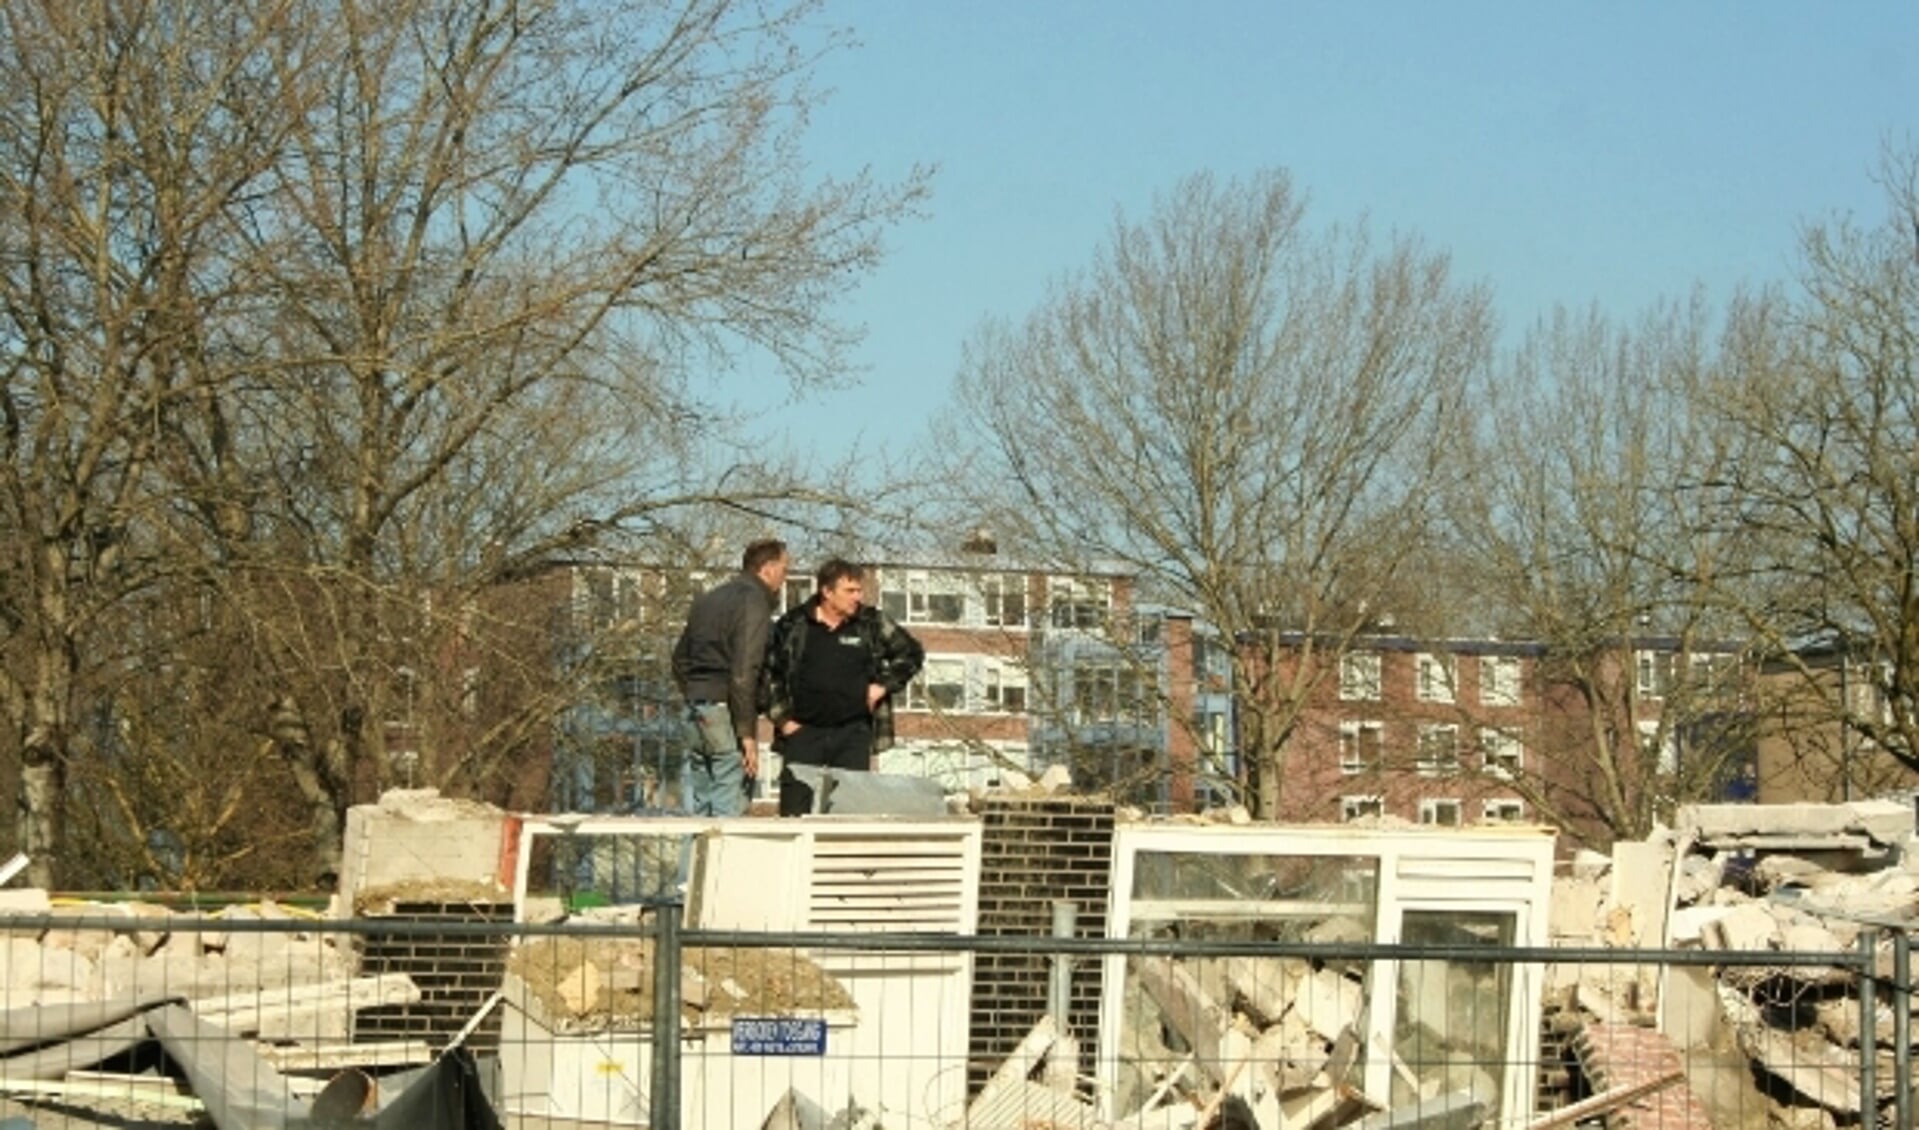 Zoals flats in IJsselveld-Oost zijn afgebroken voor nog hogere hoogbouw, zo voelt ook de bewonersgroep zich afgebroken. (Archief L. Verwegen)